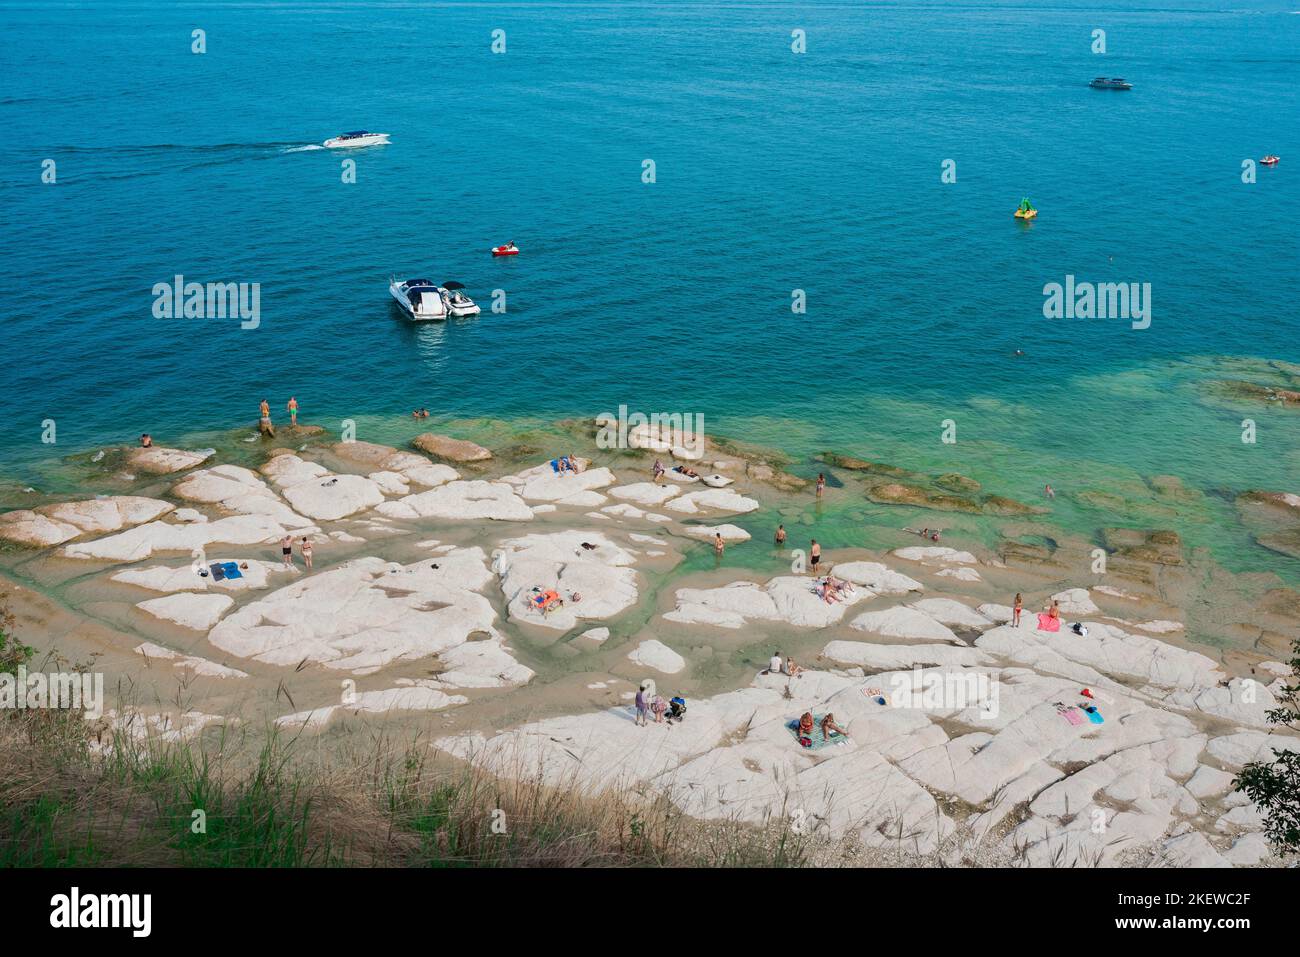 Sirmione playa, vista en verano de personas tomando el sol en Jamaica Beach en el borde norte de la península de Sirmione, Lago Garda, Lombardía, Italia Foto de stock